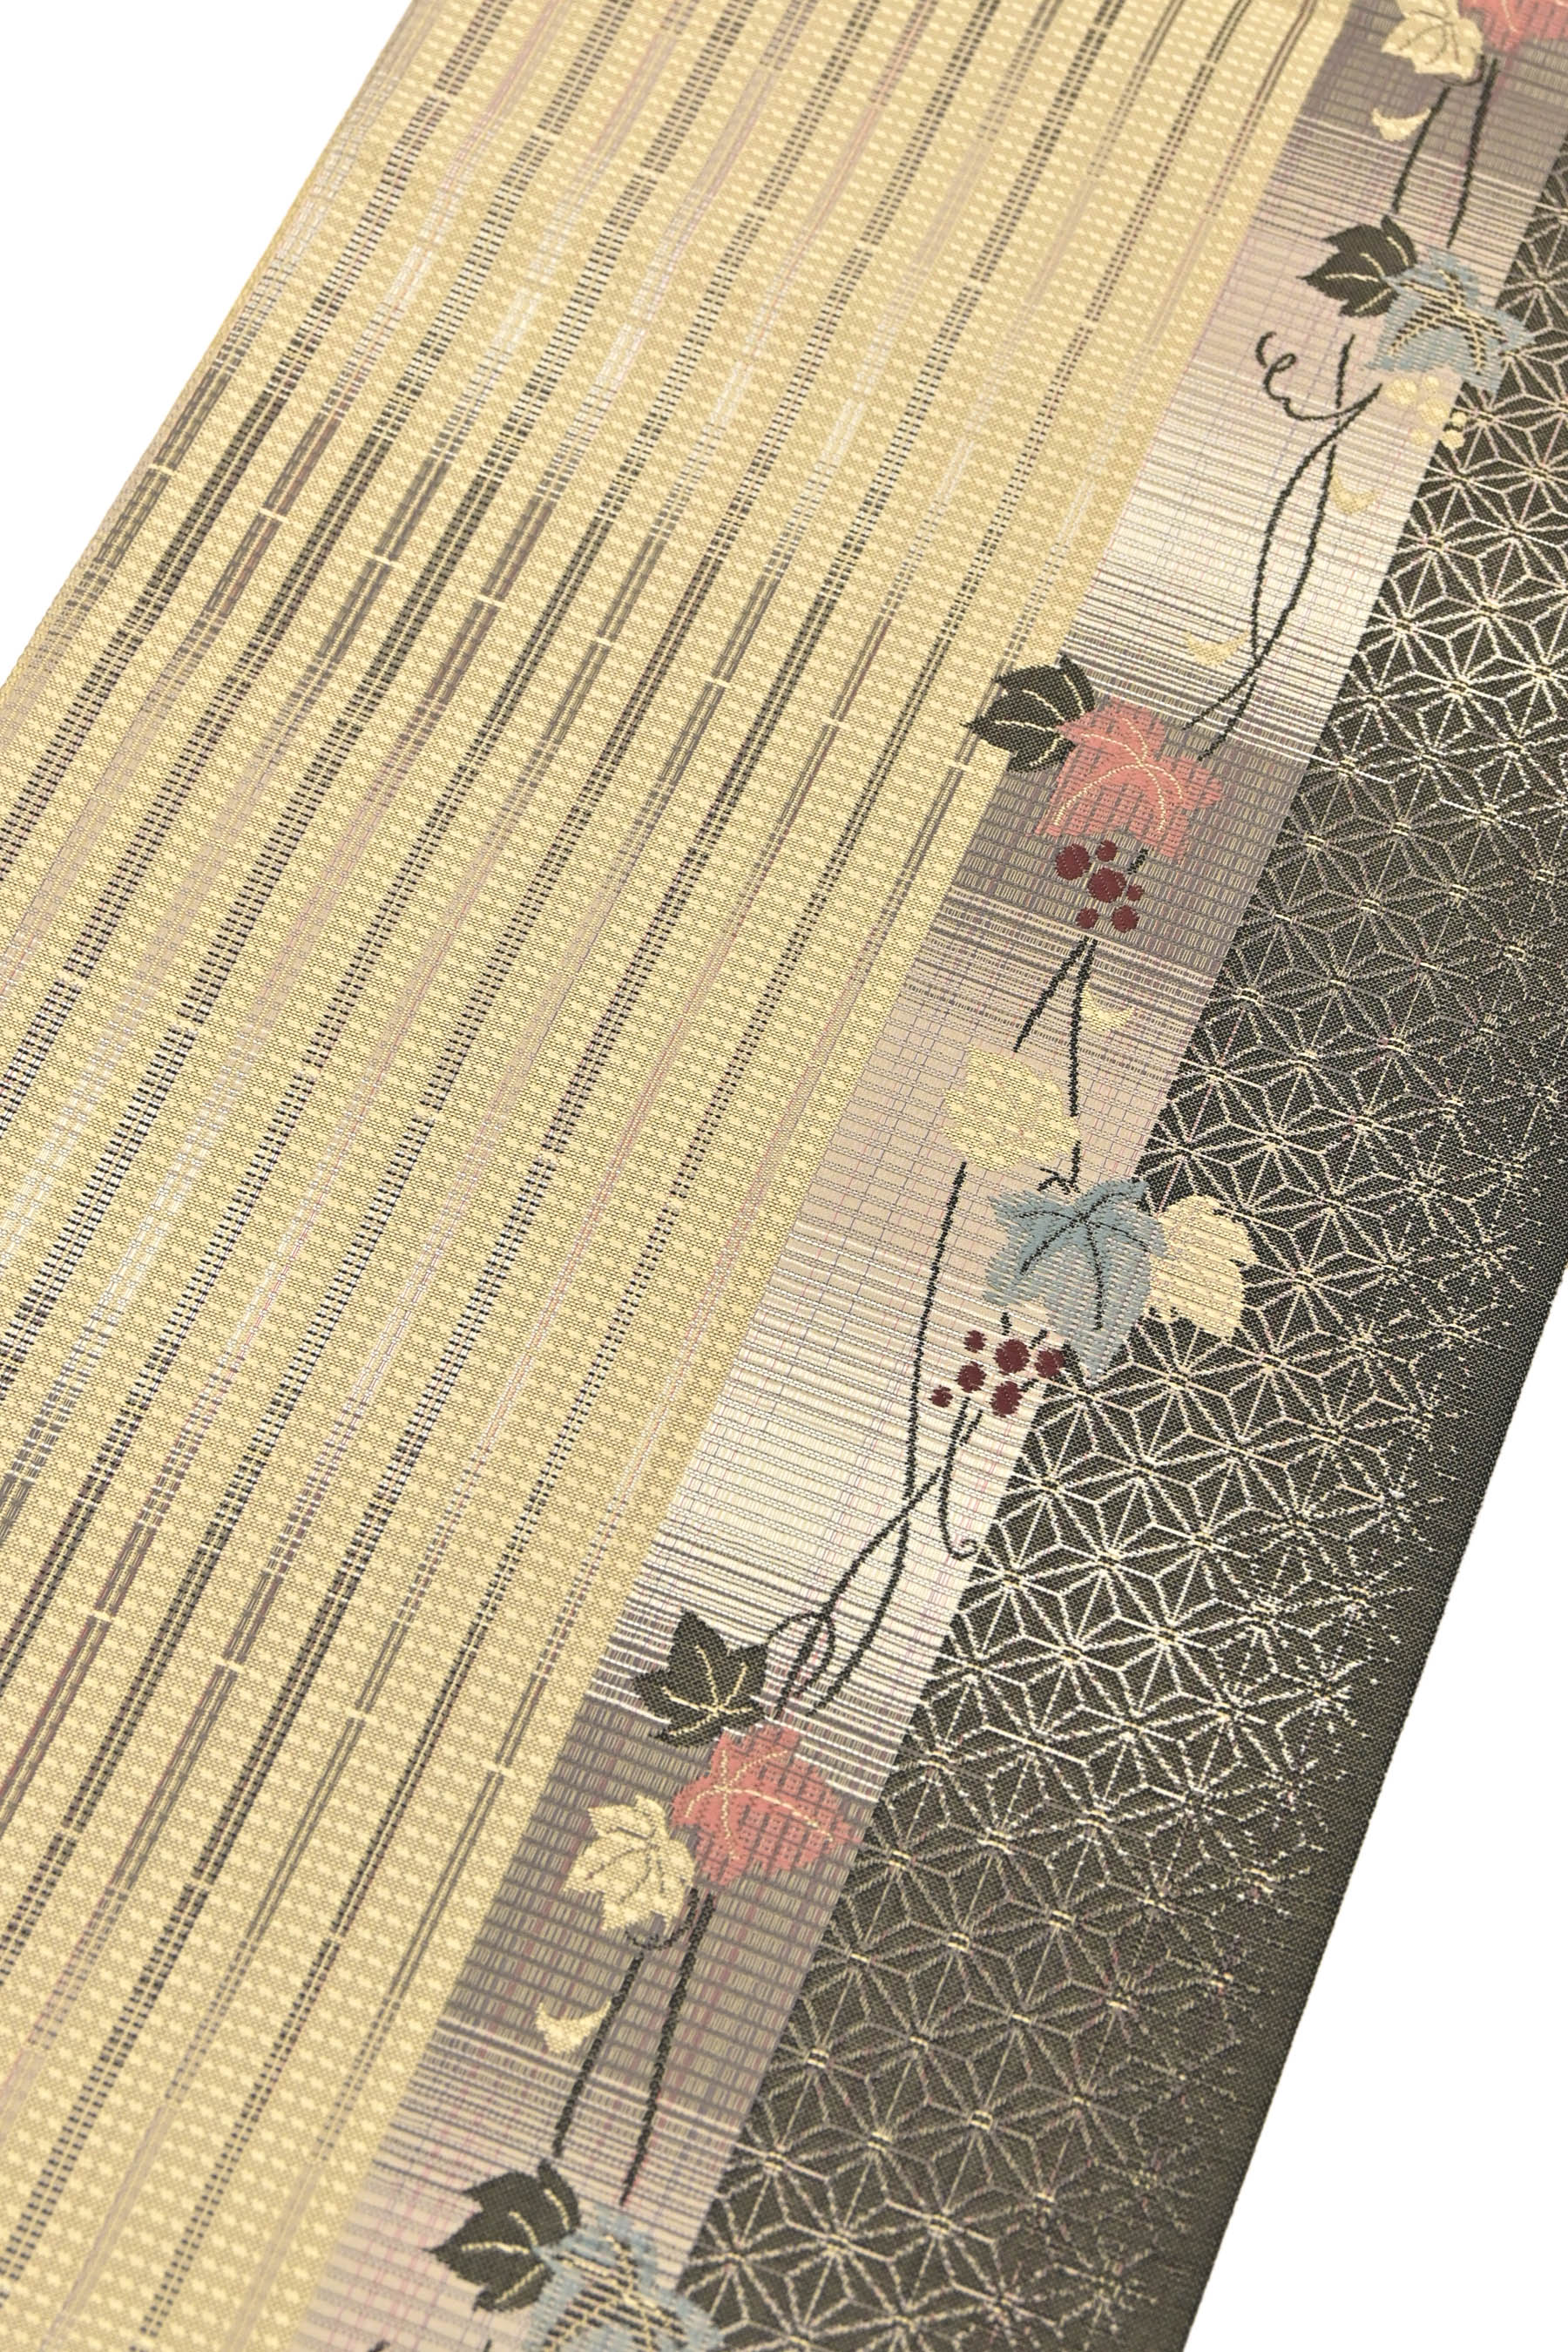 □伝統工芸士 時枝洋海 全通柄袋帯 唐織 泥染 舞桜 銀糸 やまと誂製